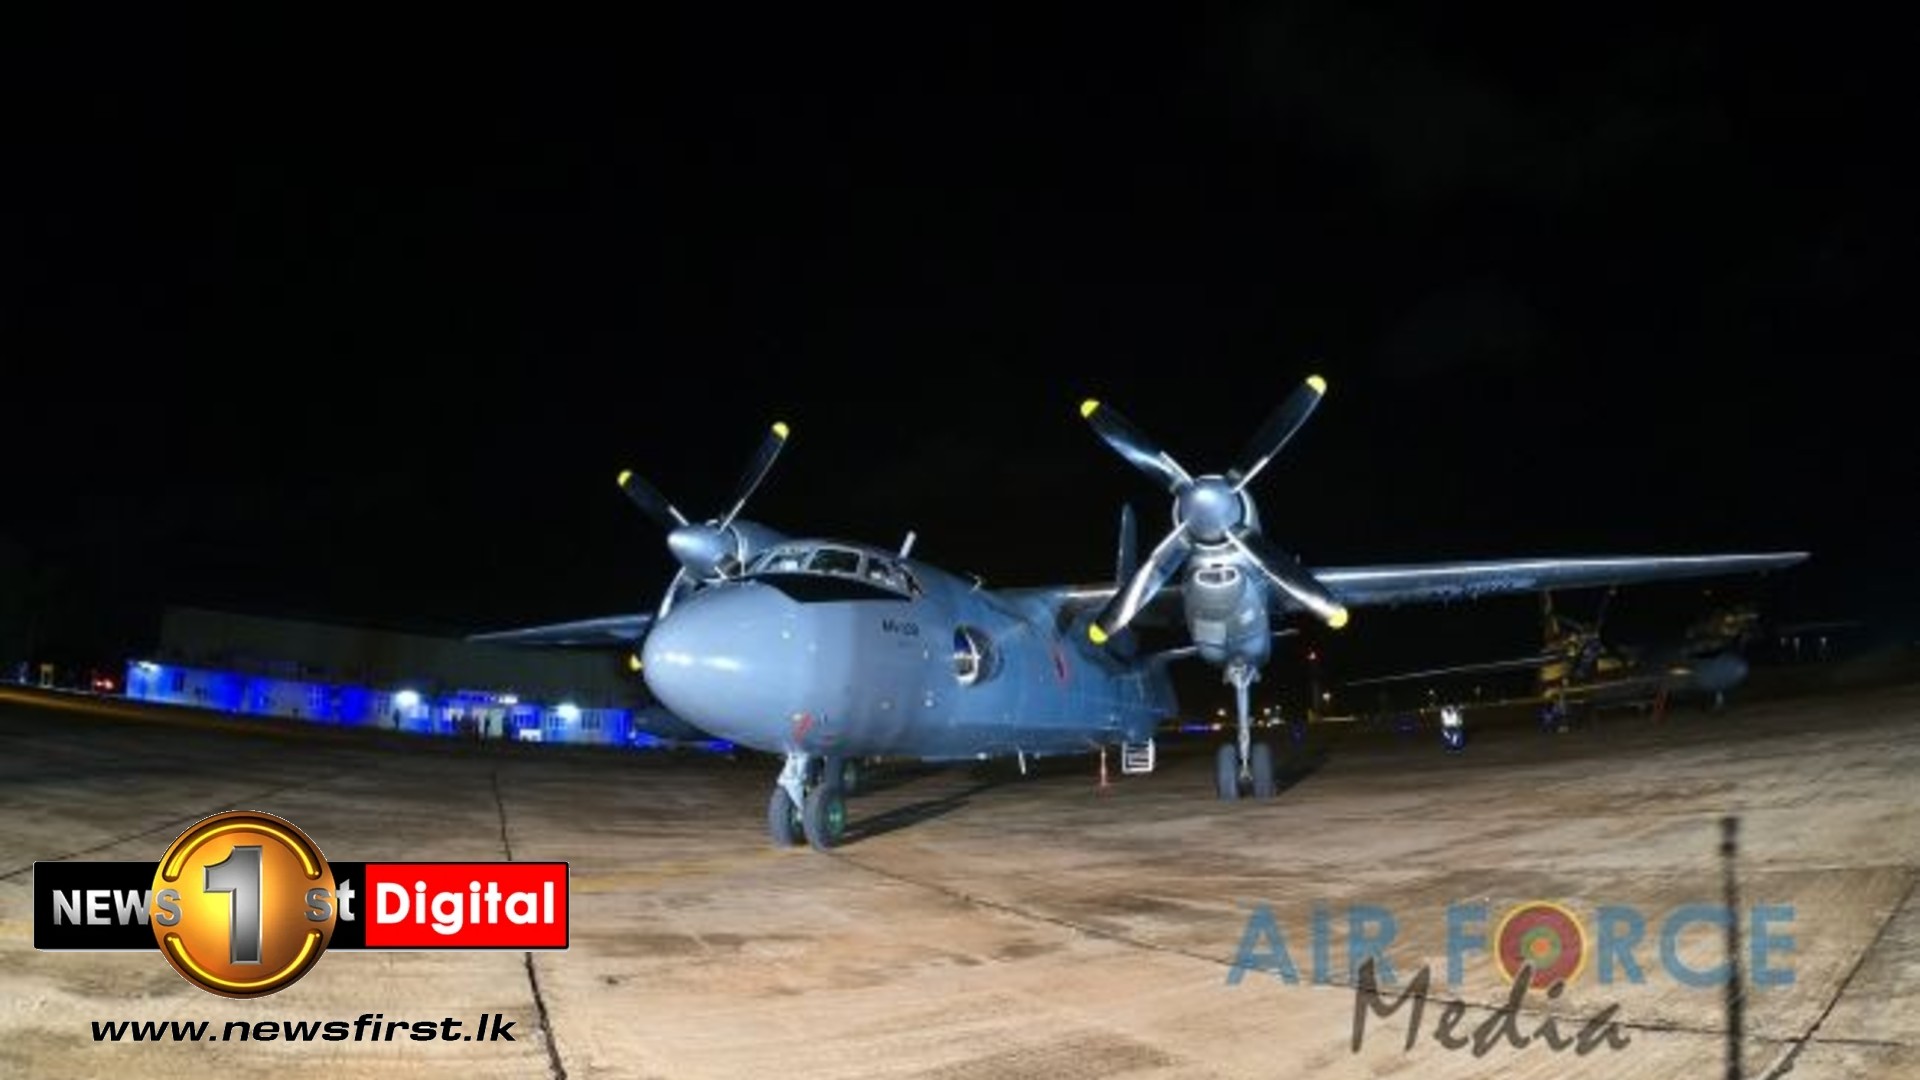 Sri Lanka Air Force AN-32s return home following repairs